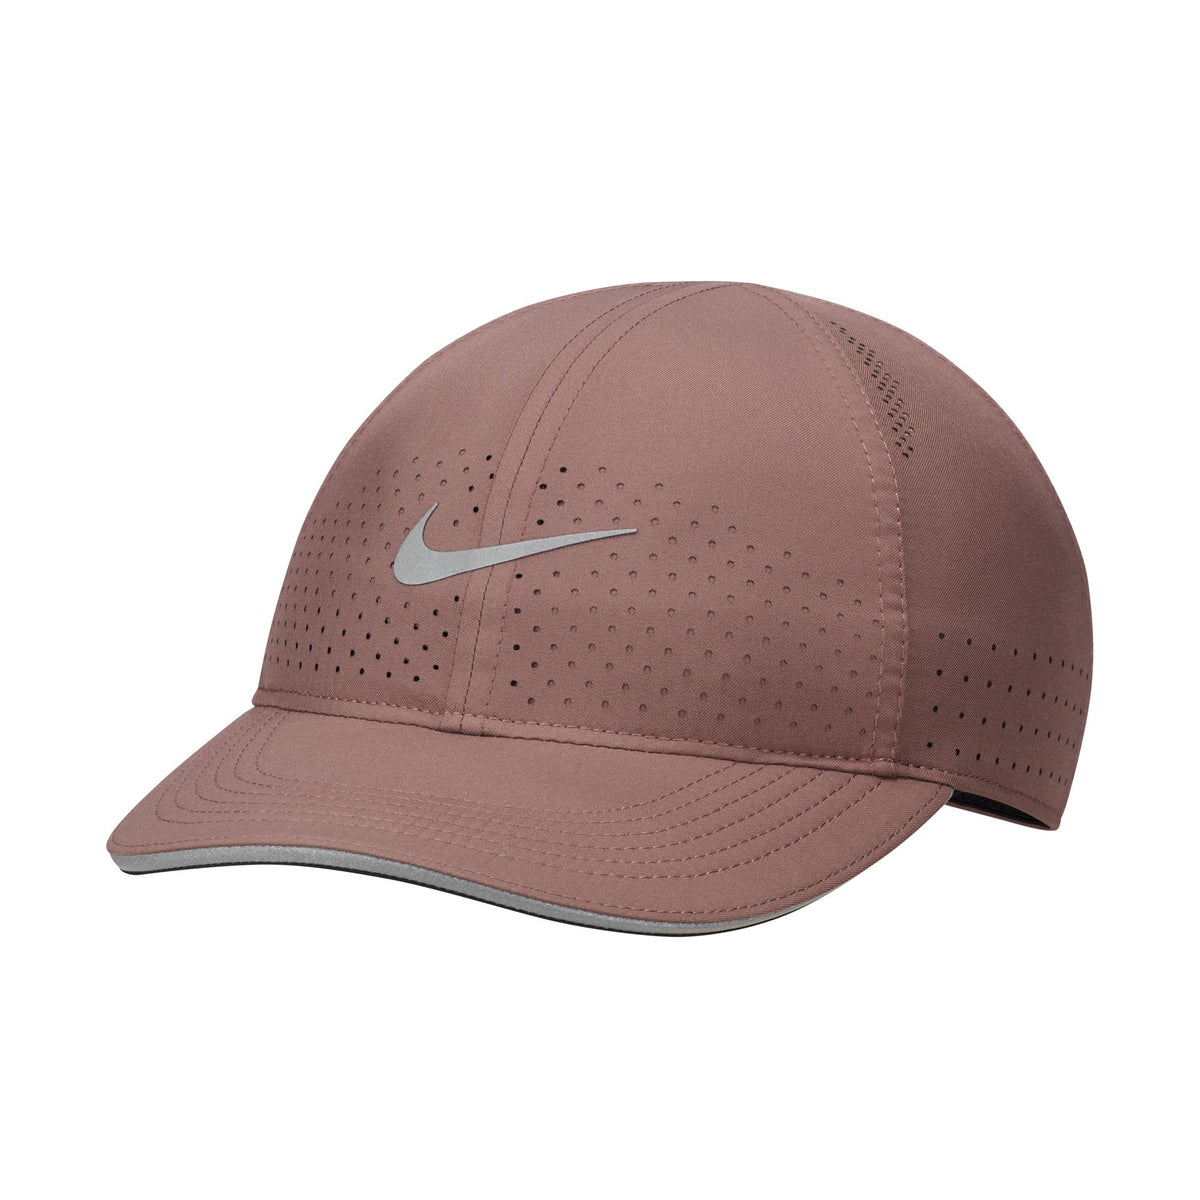 Nike Women's Featherlight Running Hat $ 28